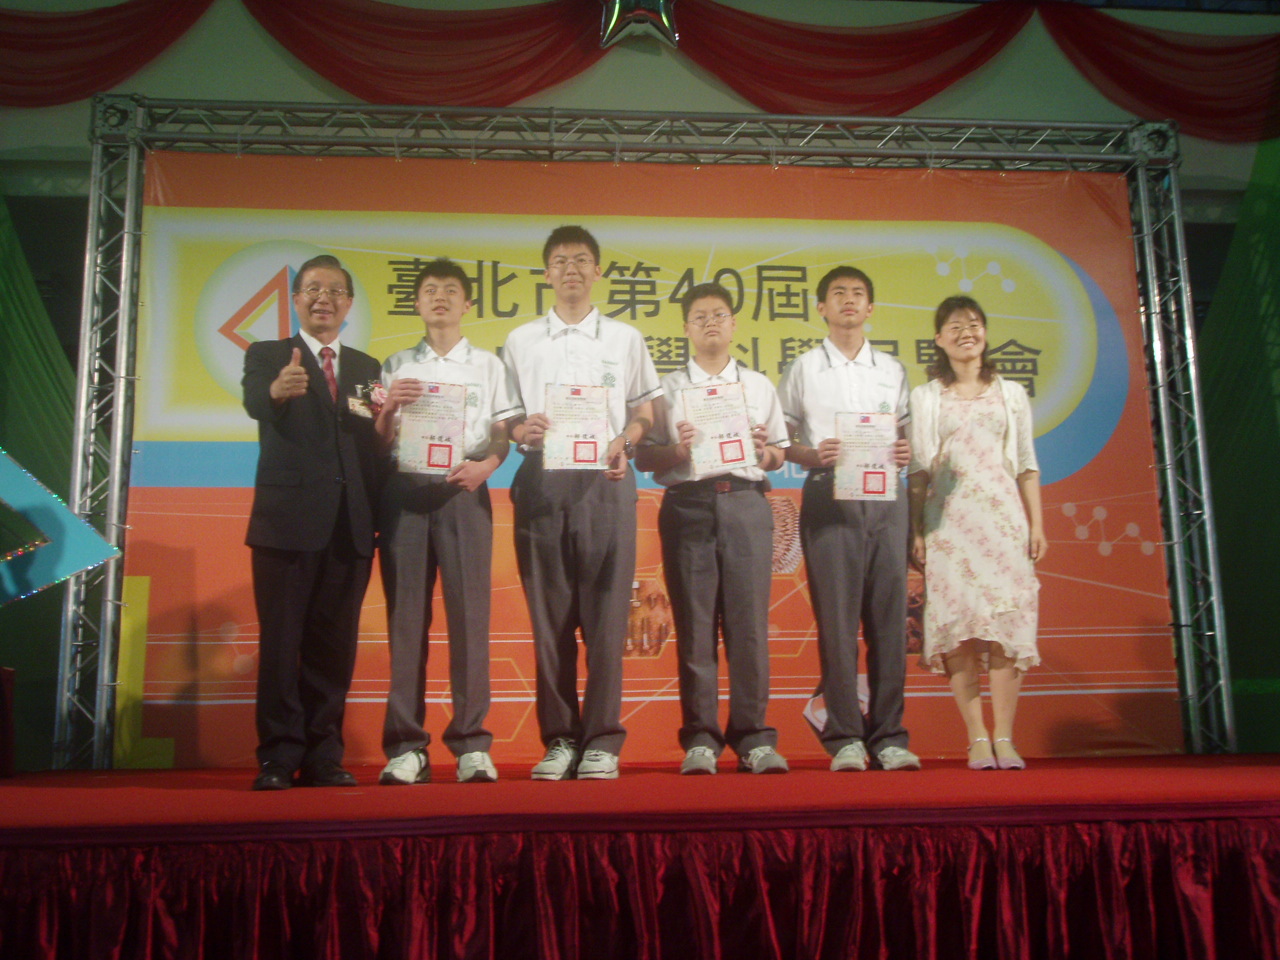 劉老師指導學生參加台北市第40屆科展成績優異